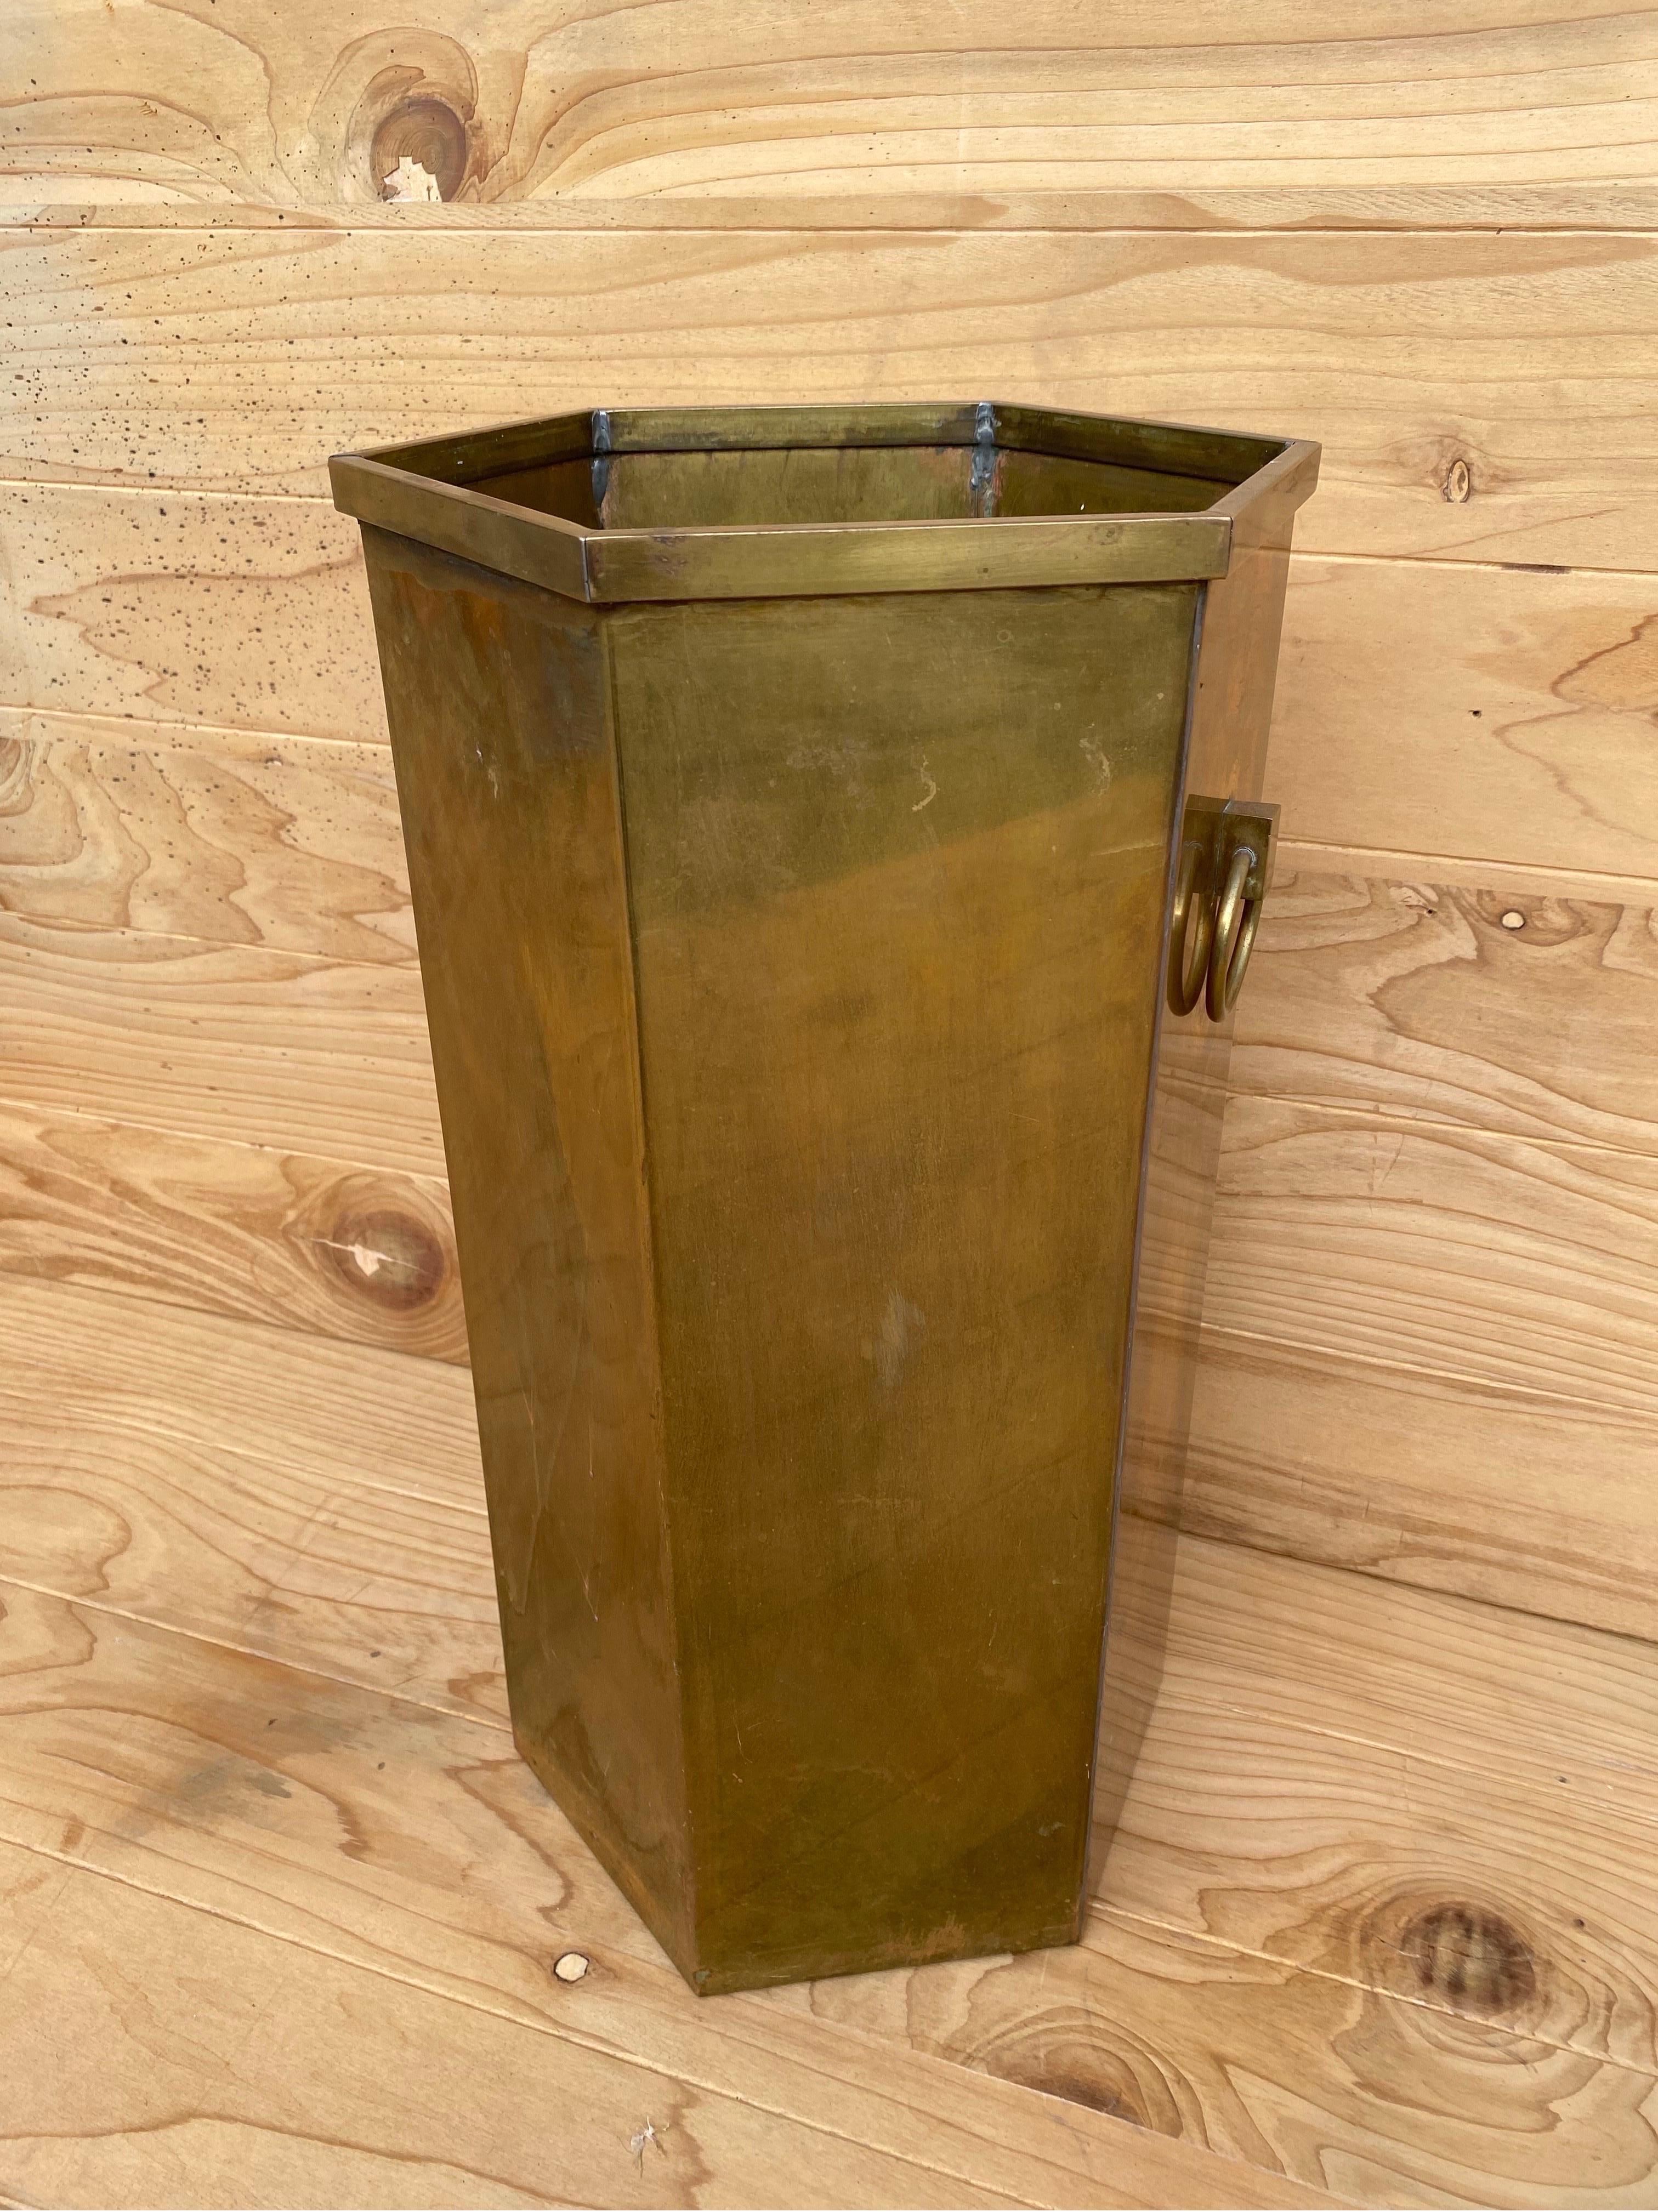 Antiker Bronze Umbrella Stand
Dieser antike Bronzebehälter kann in Ihrem Haus oder Büro vielseitig verwendet werden. Vom Schirmständer bis zum Papierkorb wird diese Antiquität Ihren Raum mit bronzener Wärme aufwerten. 

CIRCA Anfang 20.